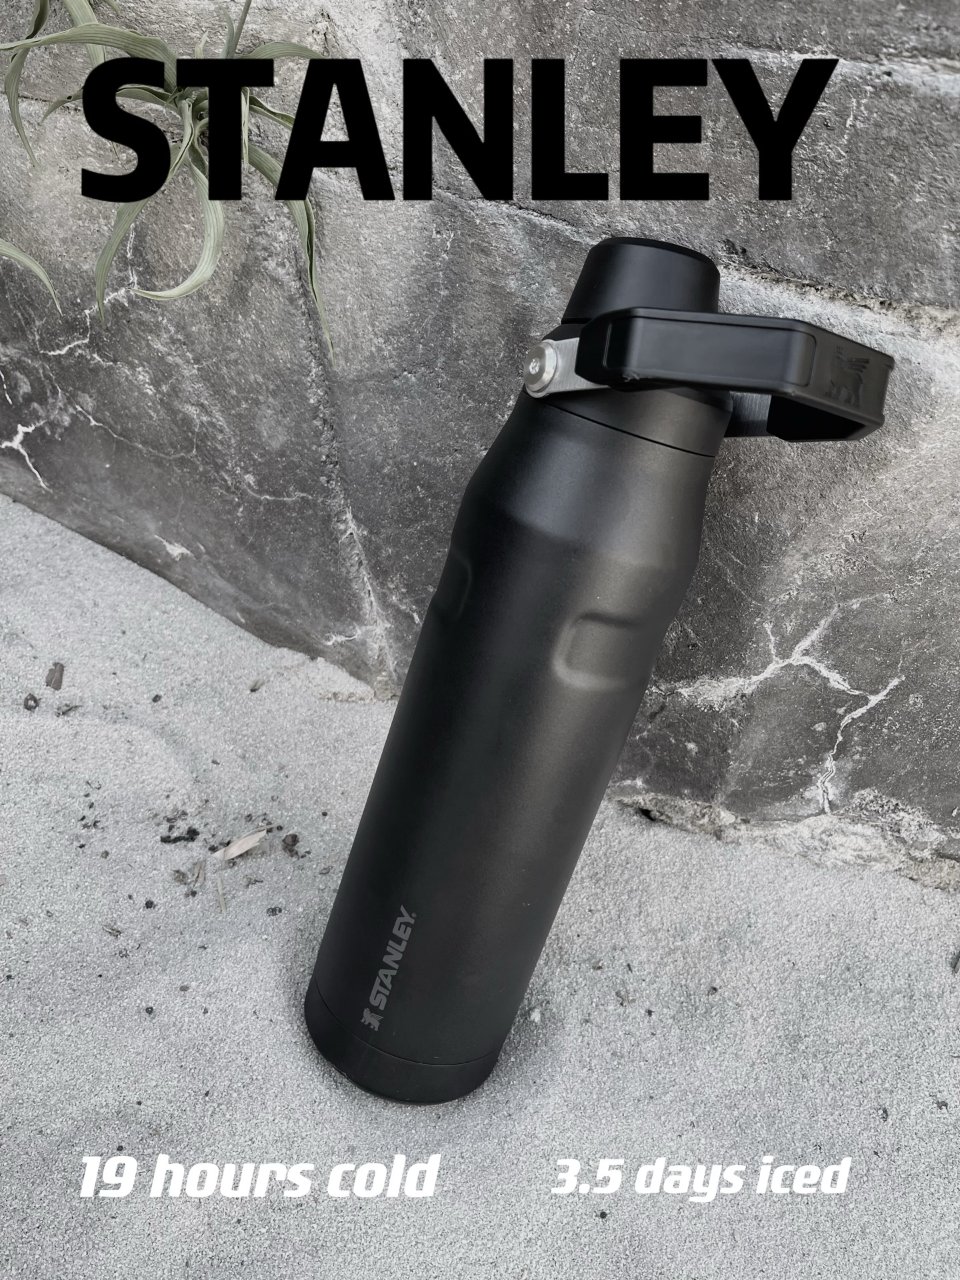 到手就被抢走的Stanley防漏便携水瓶...